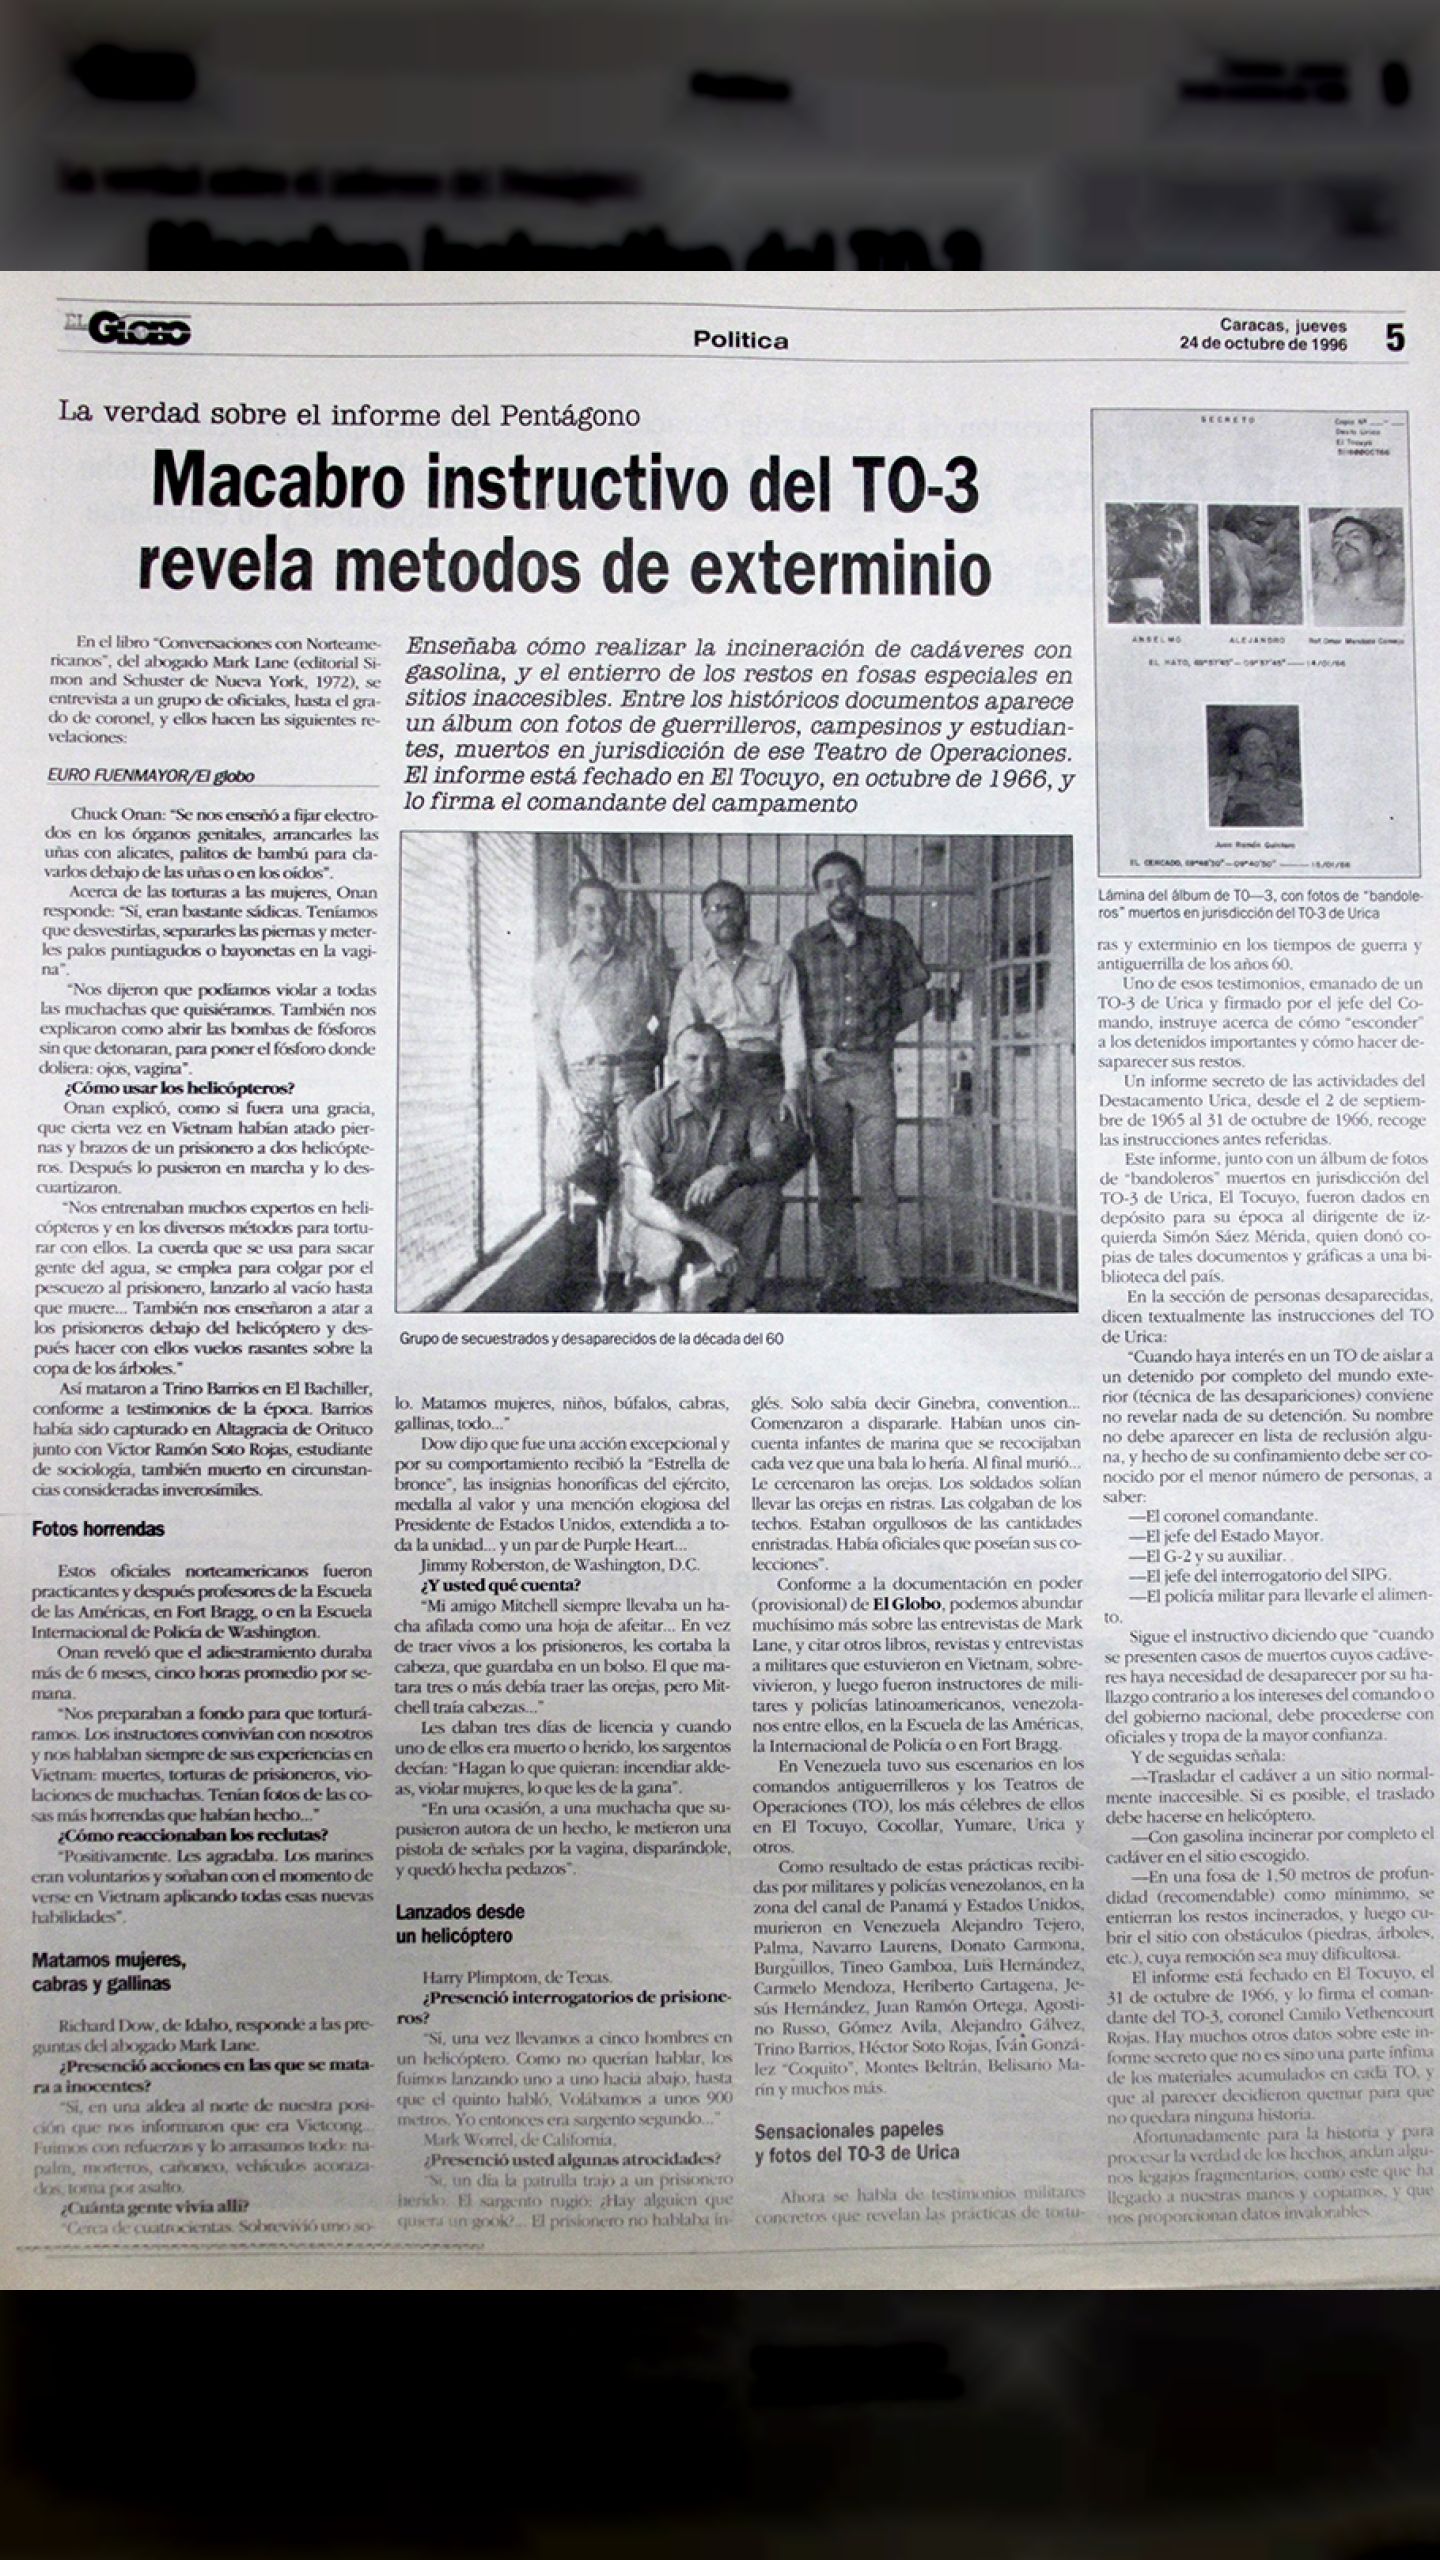 Macabro instructivo del TO-3 revela métodos de exterminio (El Globo, 24 de octubre 1996)